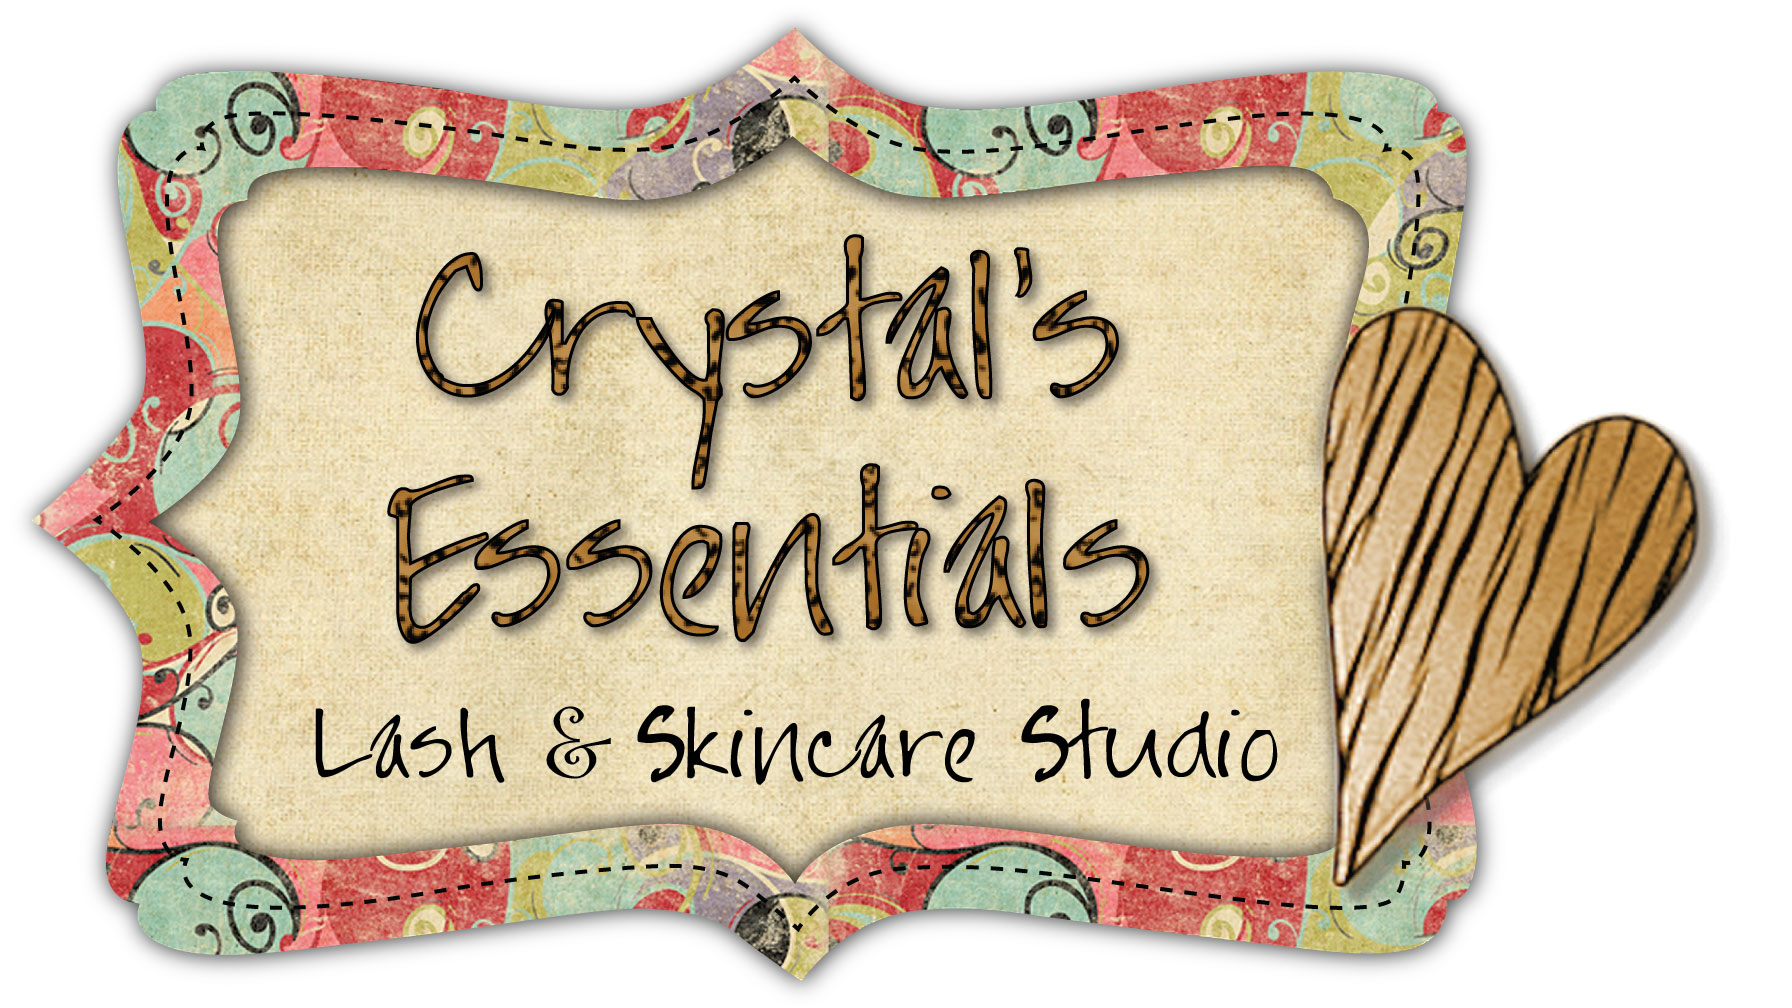 Crystal's Essentials Lash & Skincare Studio